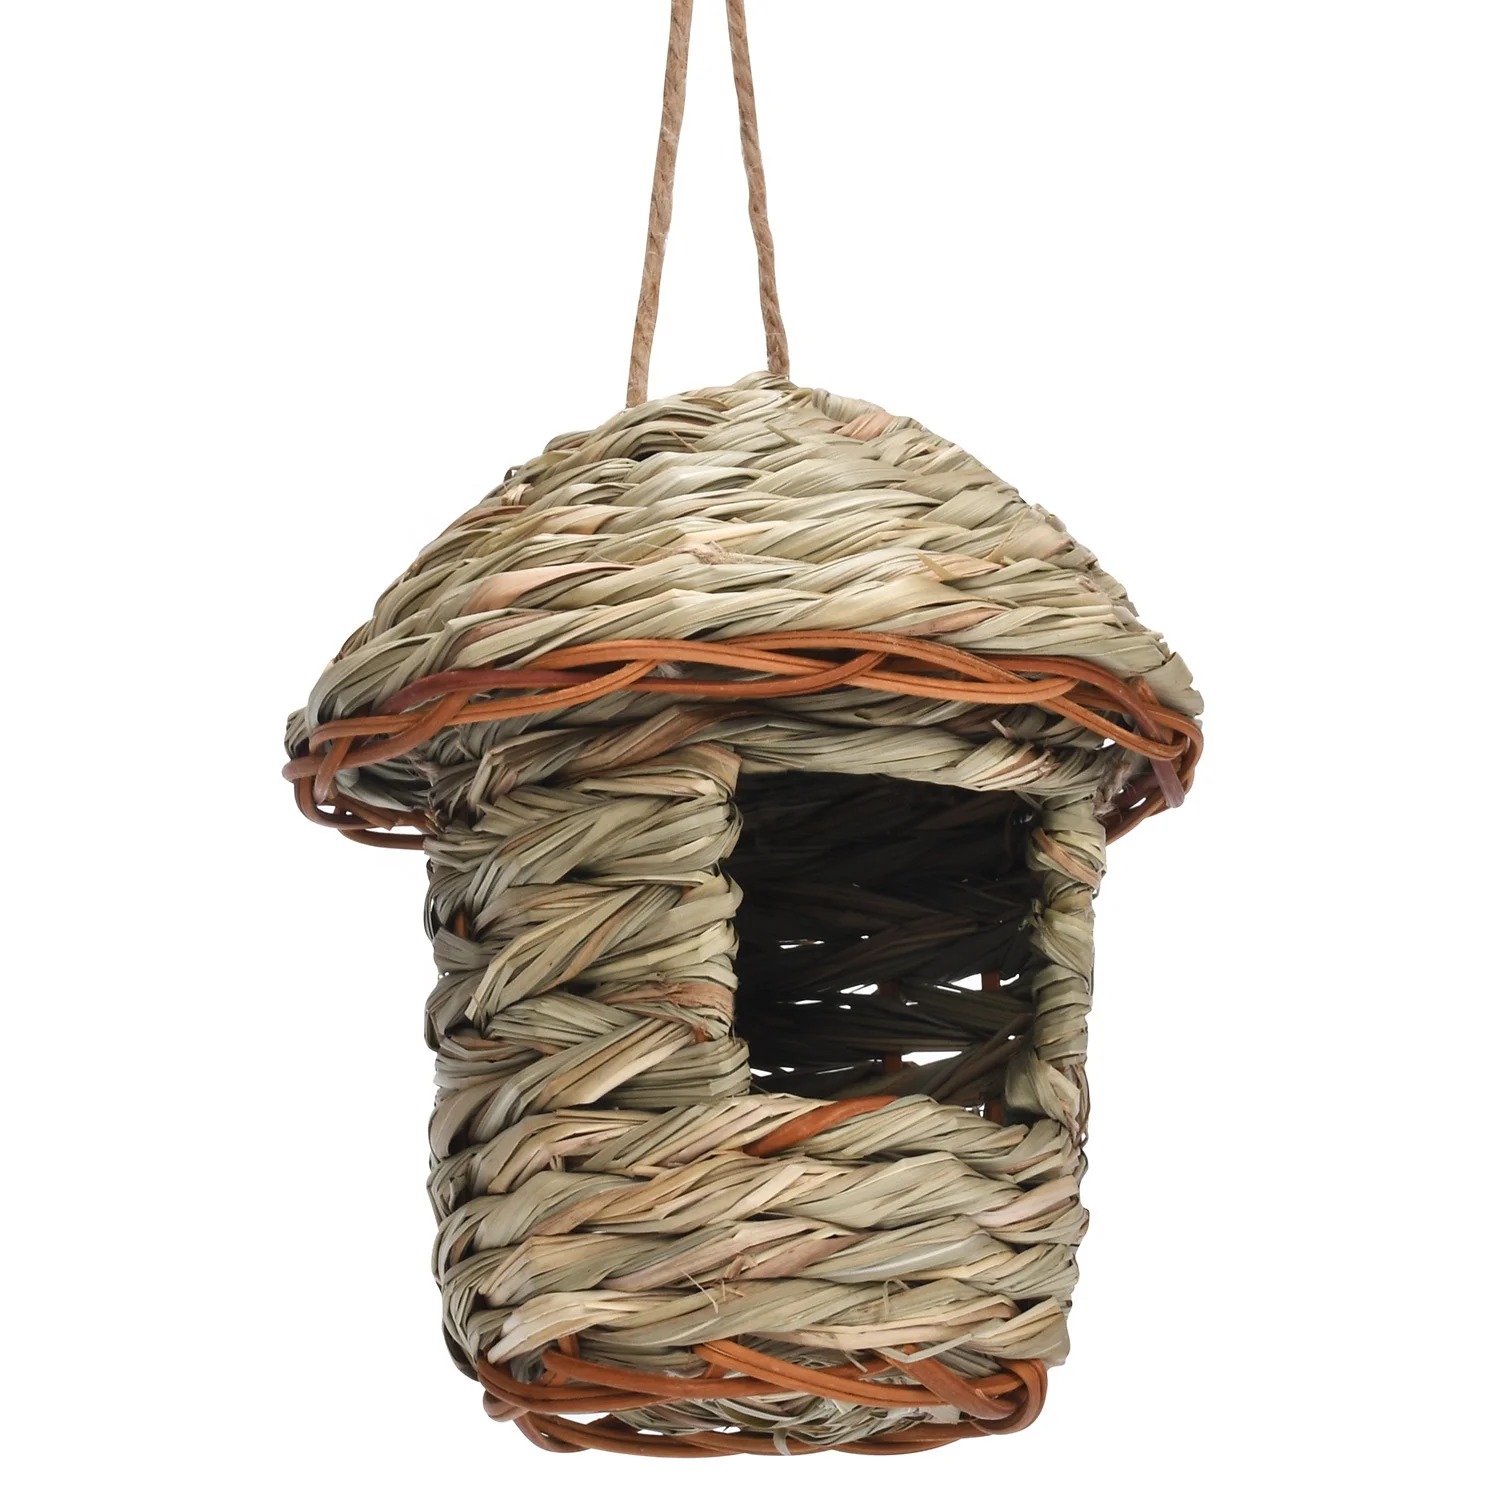 Hummingbird Birdhouse for Outside Hanging Grass Hand Woven Bird Nest Natural Bird Hut for Outdoor